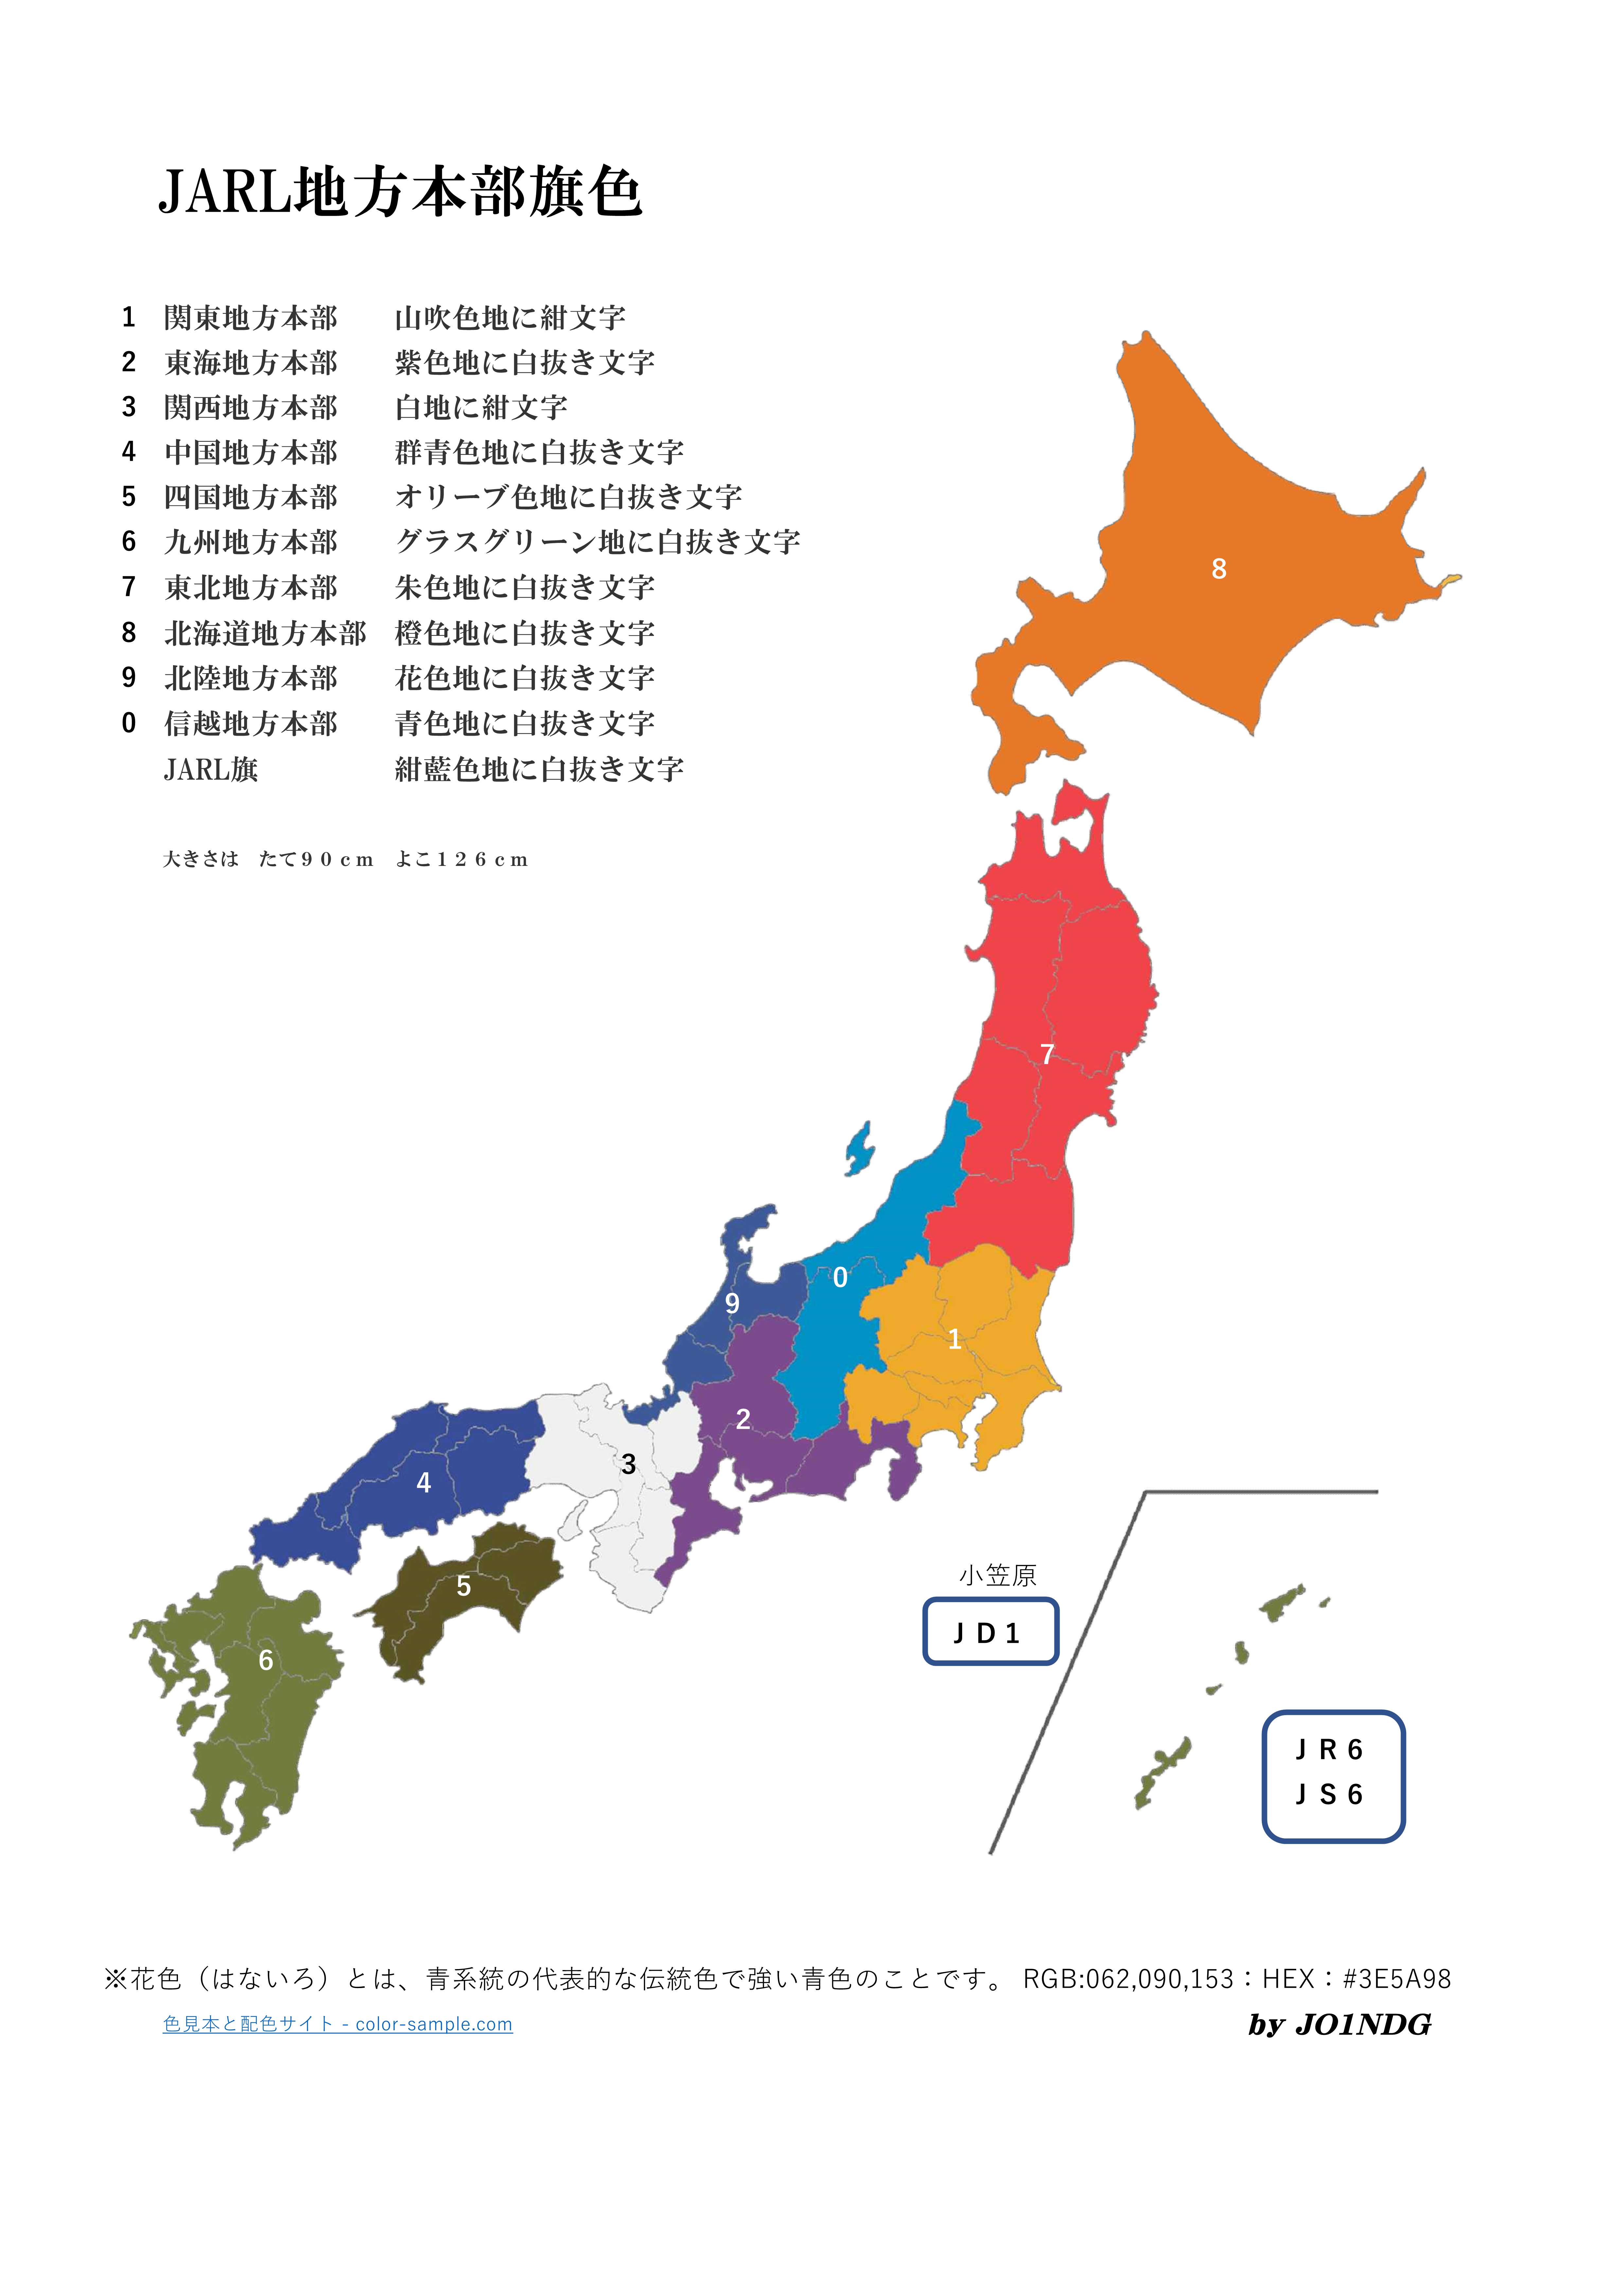 JAPAN-MAP(HUM-JARL)